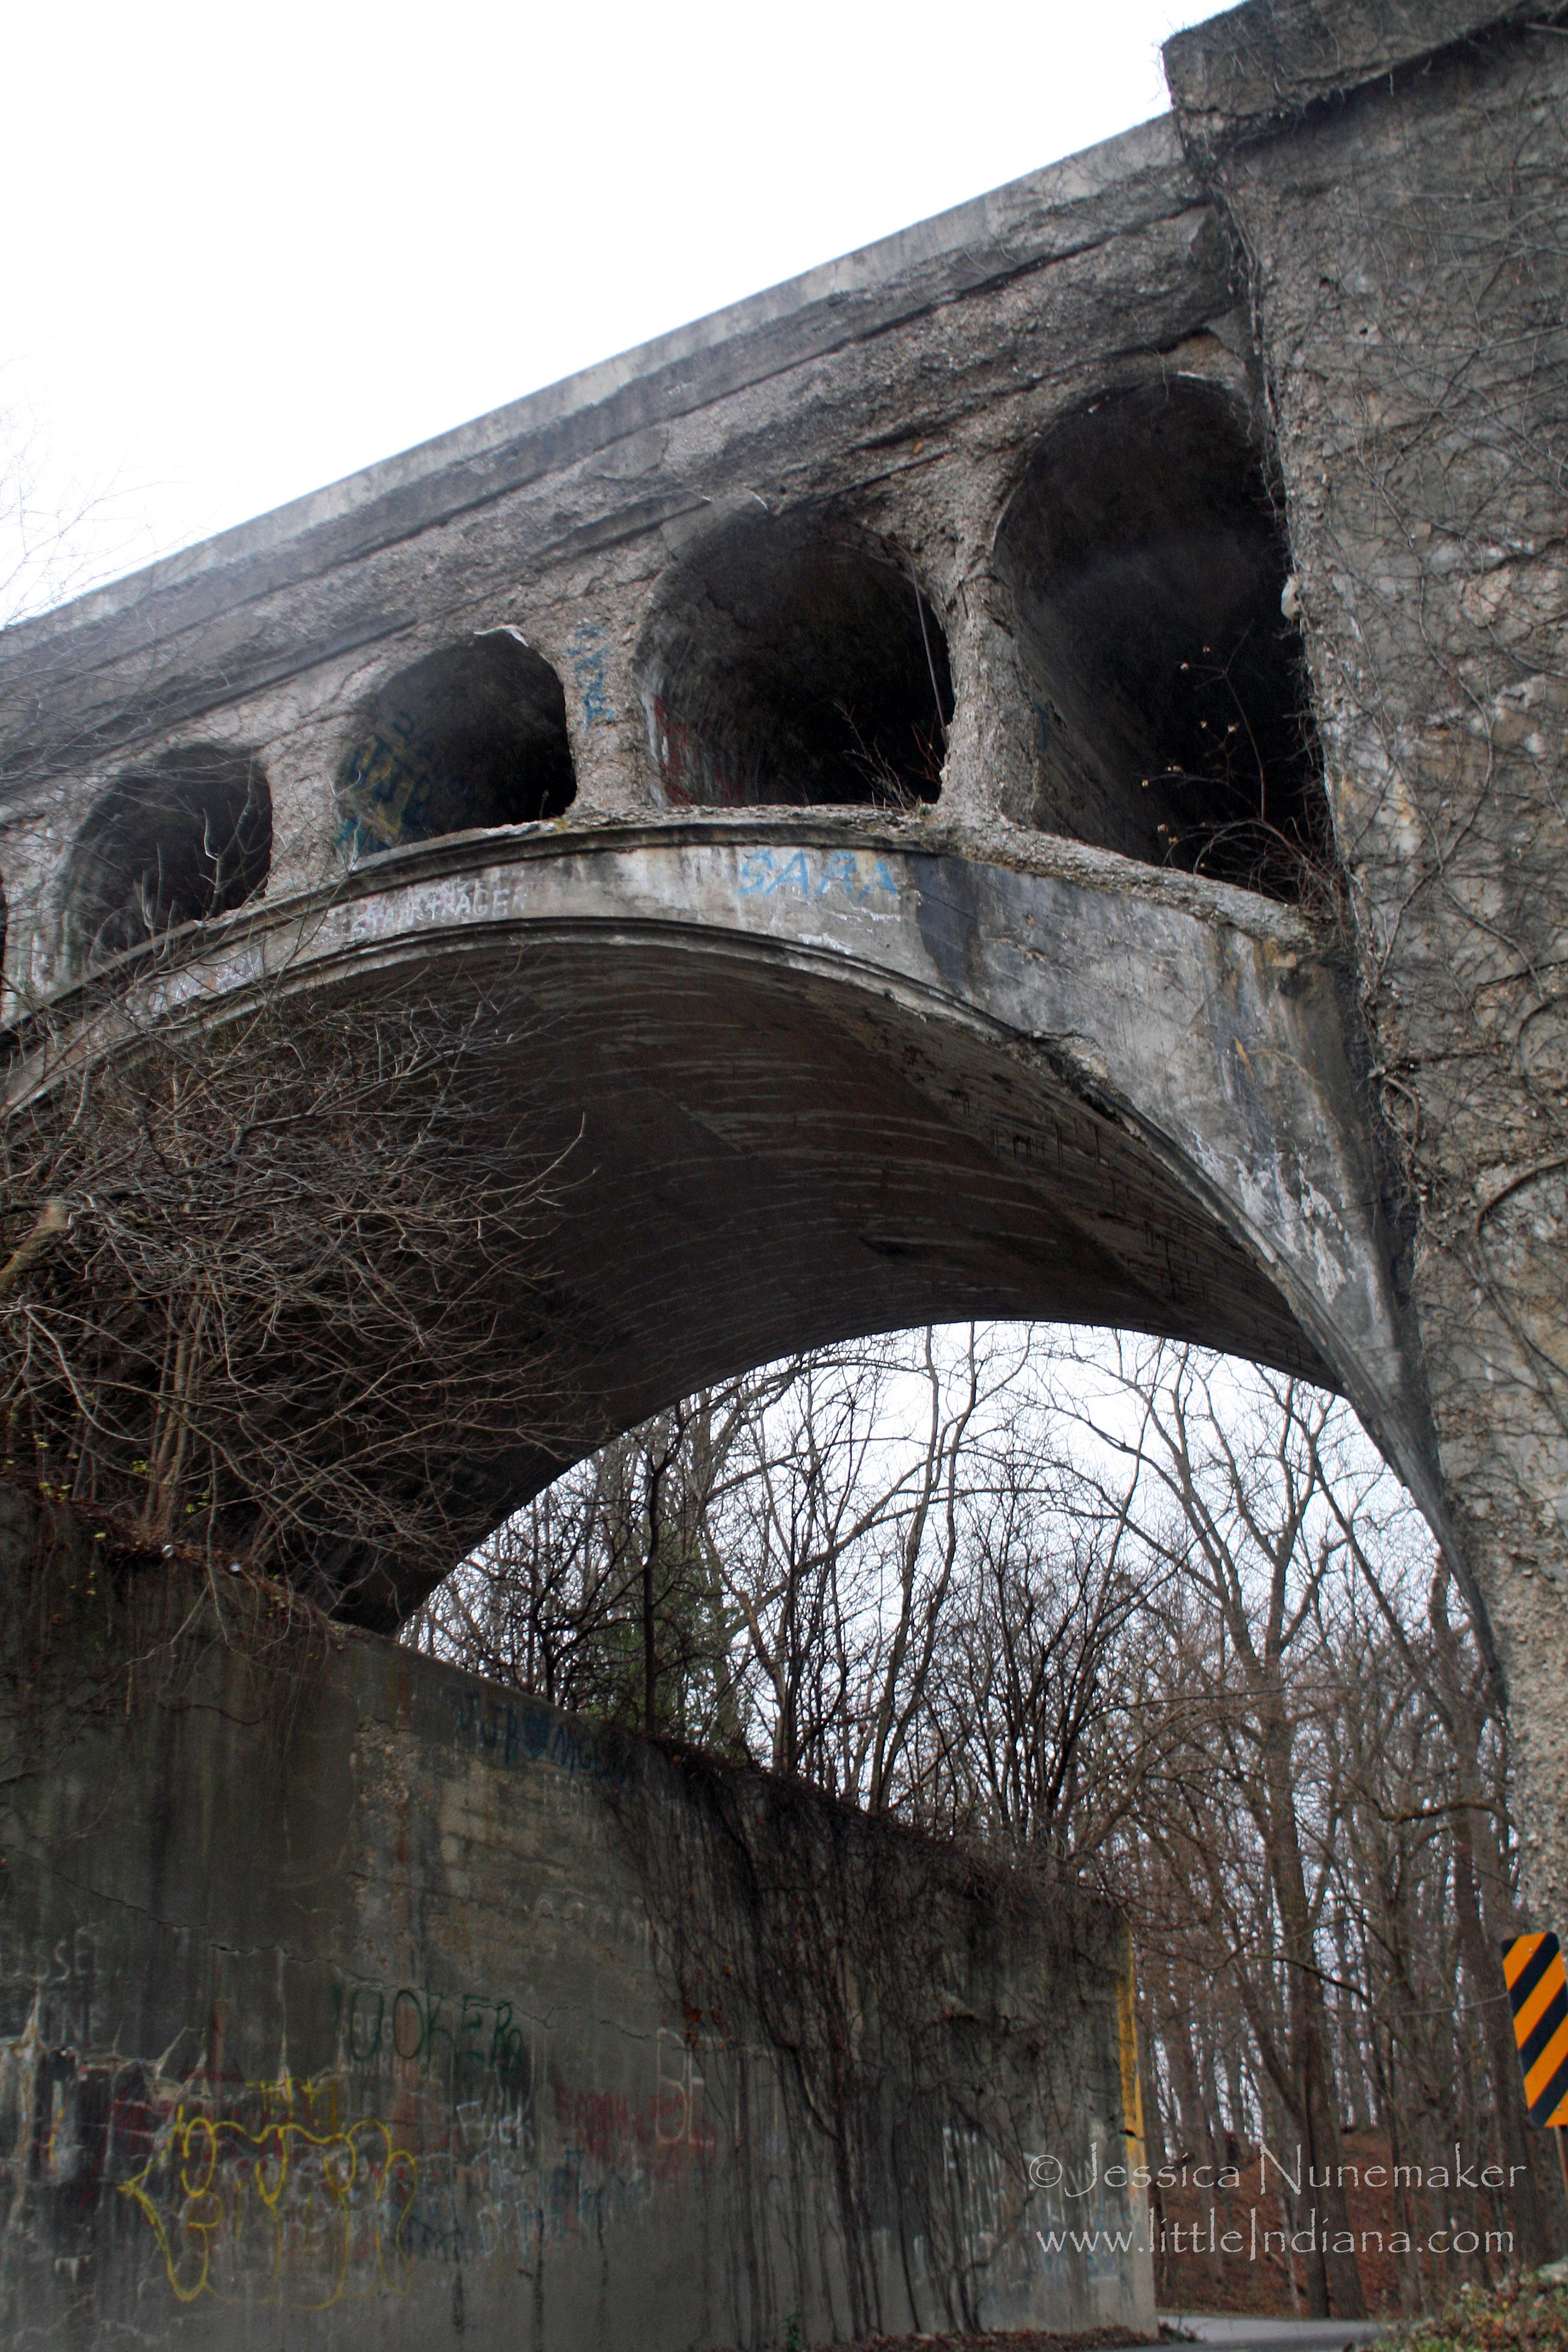 Hendricks County Concrete Bridge: One of the Two Twin Bridges